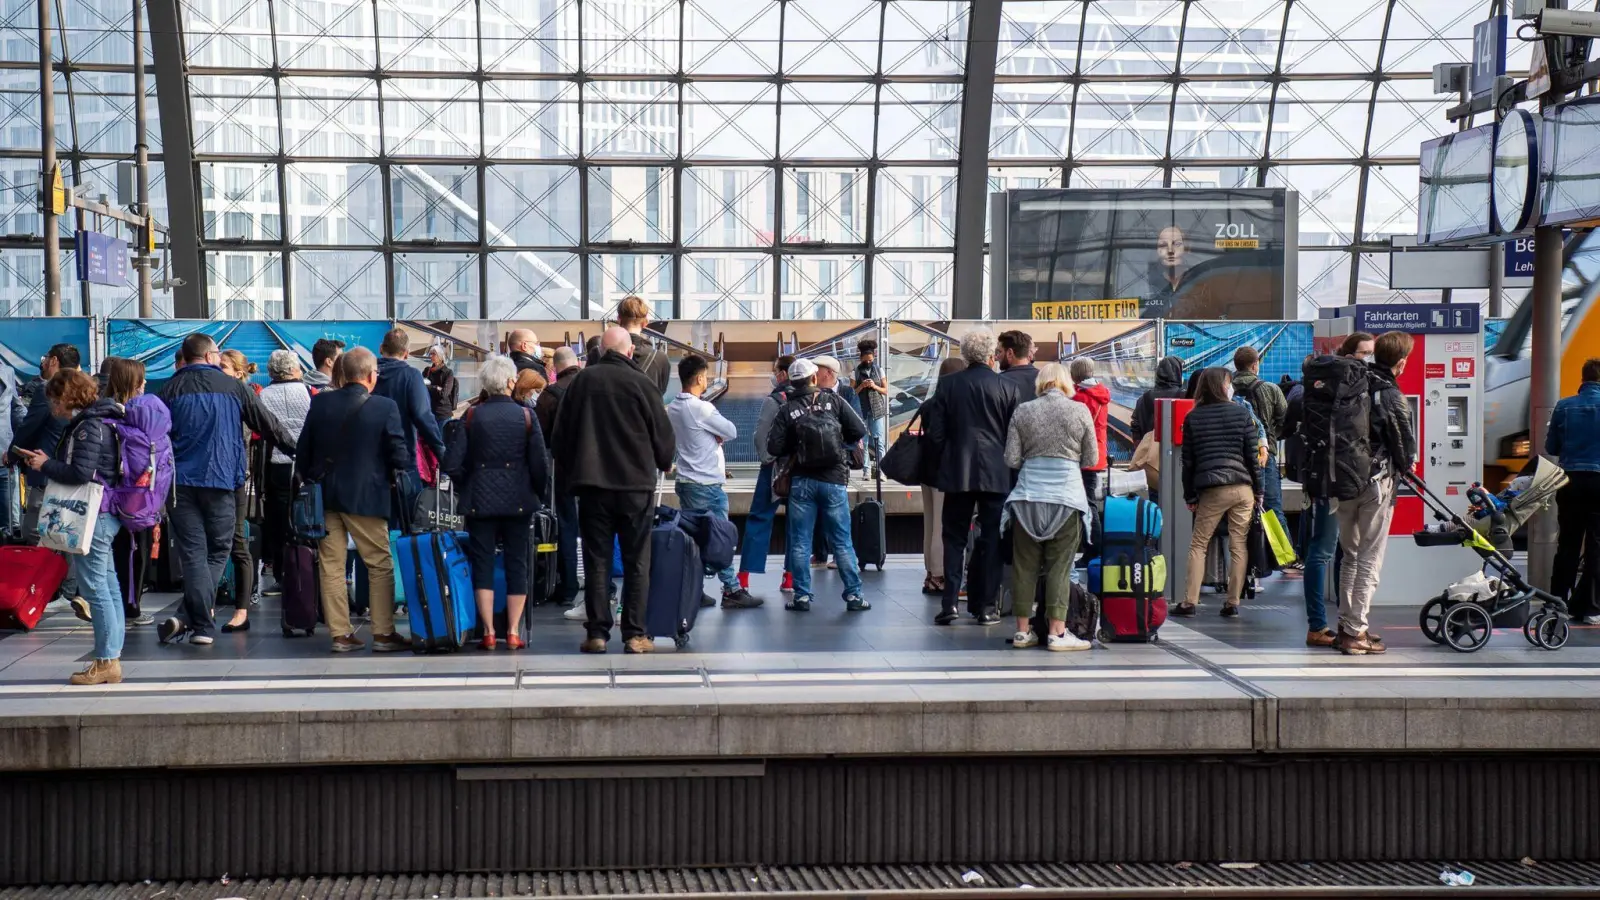 Bei Zugverspätungen stehen Bahnreisenden Rechte zu. Es wird empfohlen, die Verspätung zu dokumentieren, Bestätigungen durch Bahnpersonal oder Fotos von den Anzeigetafeln können als Nachweis dienen. (Foto: Bernd Diekjobst/dpa-tmn)